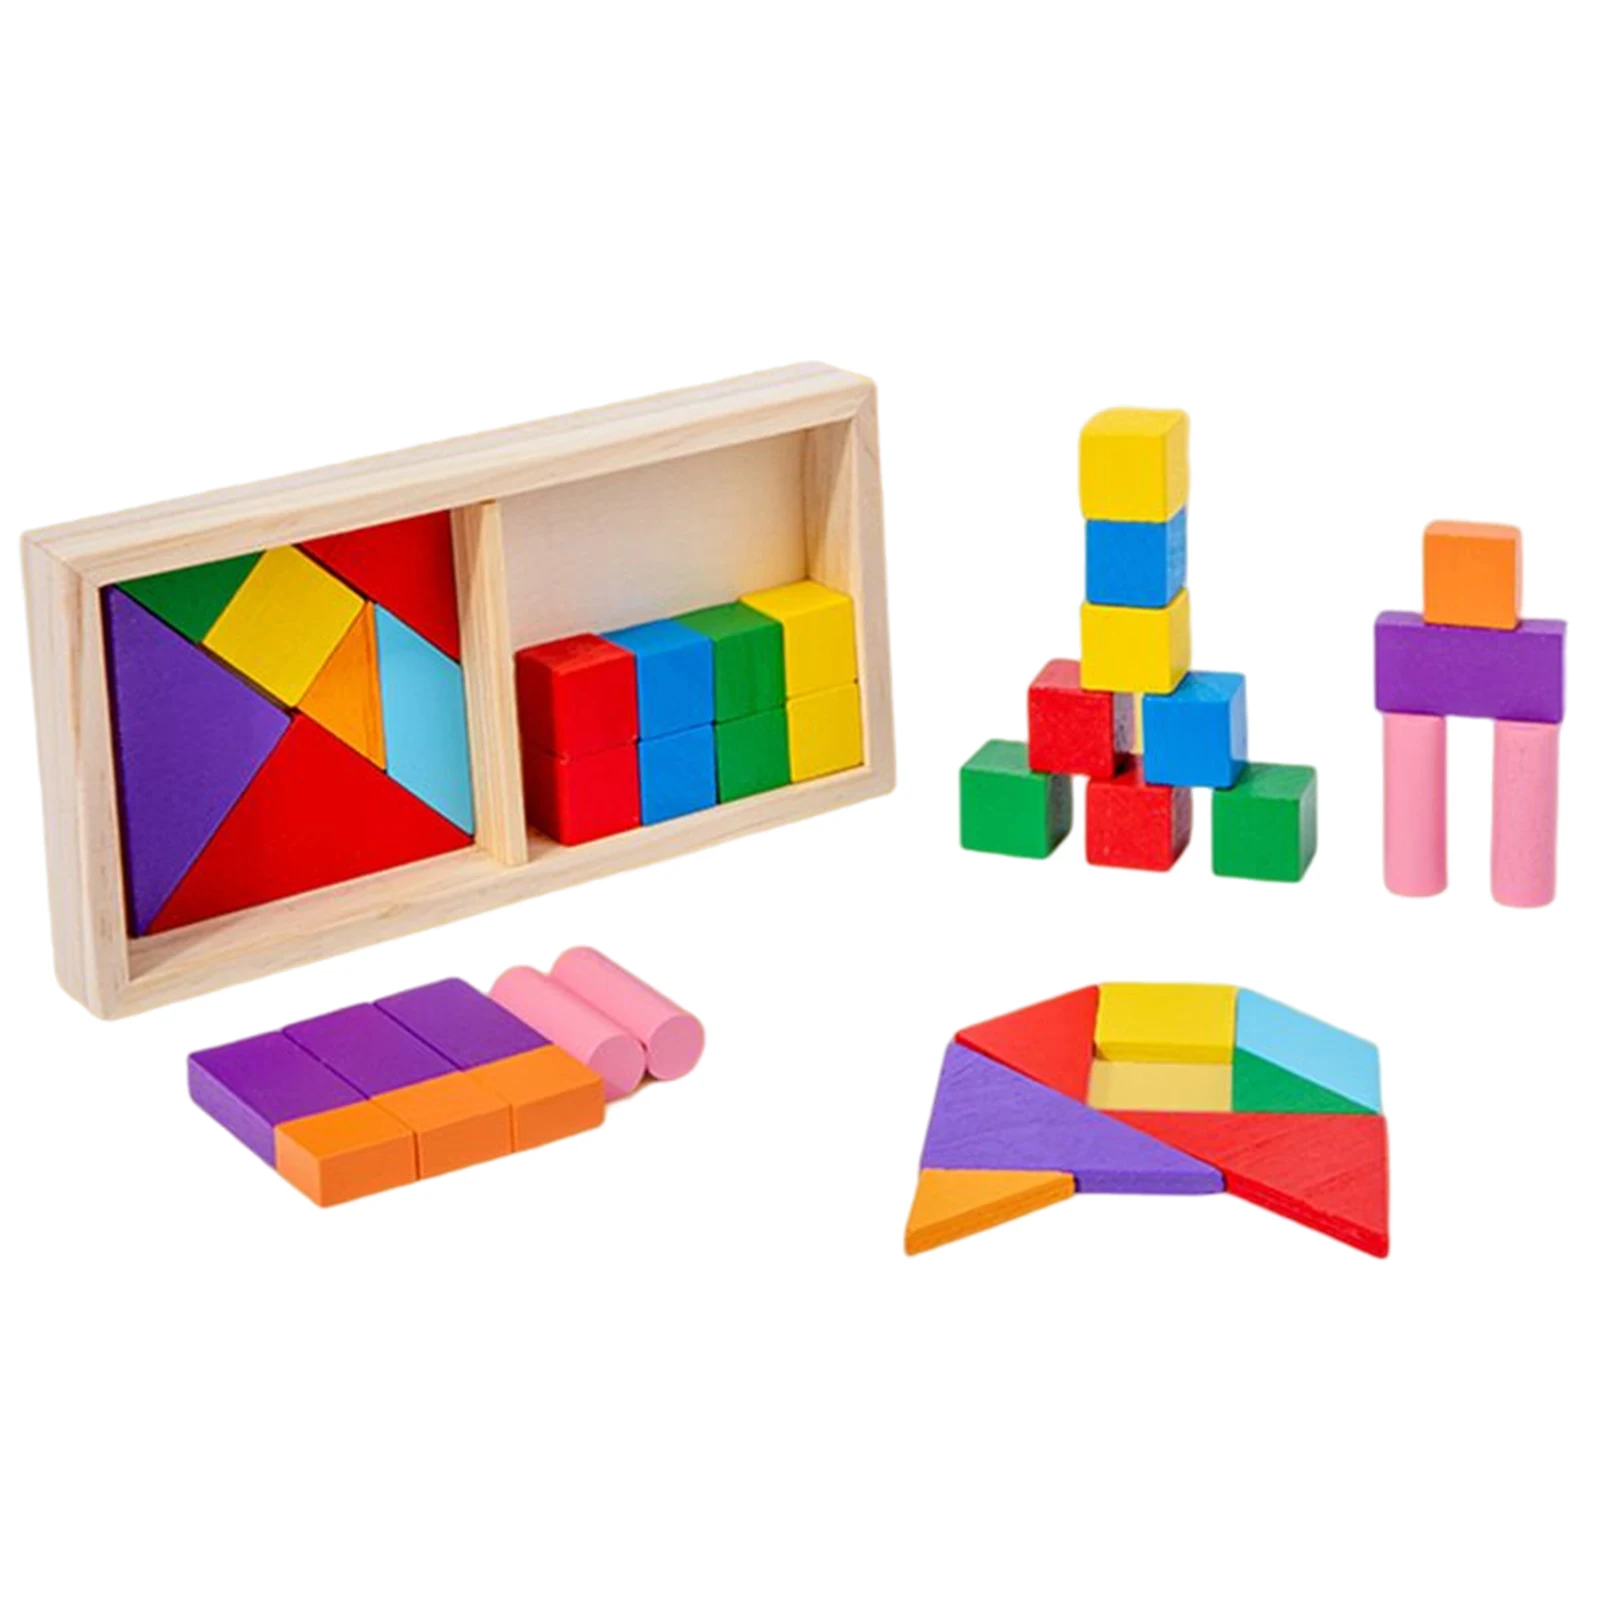 

Деревянный конструктор для сборки, пазл, игрушки, пазл для обучения мышлению, тренировочная игрушка для дошкольной активности малыша